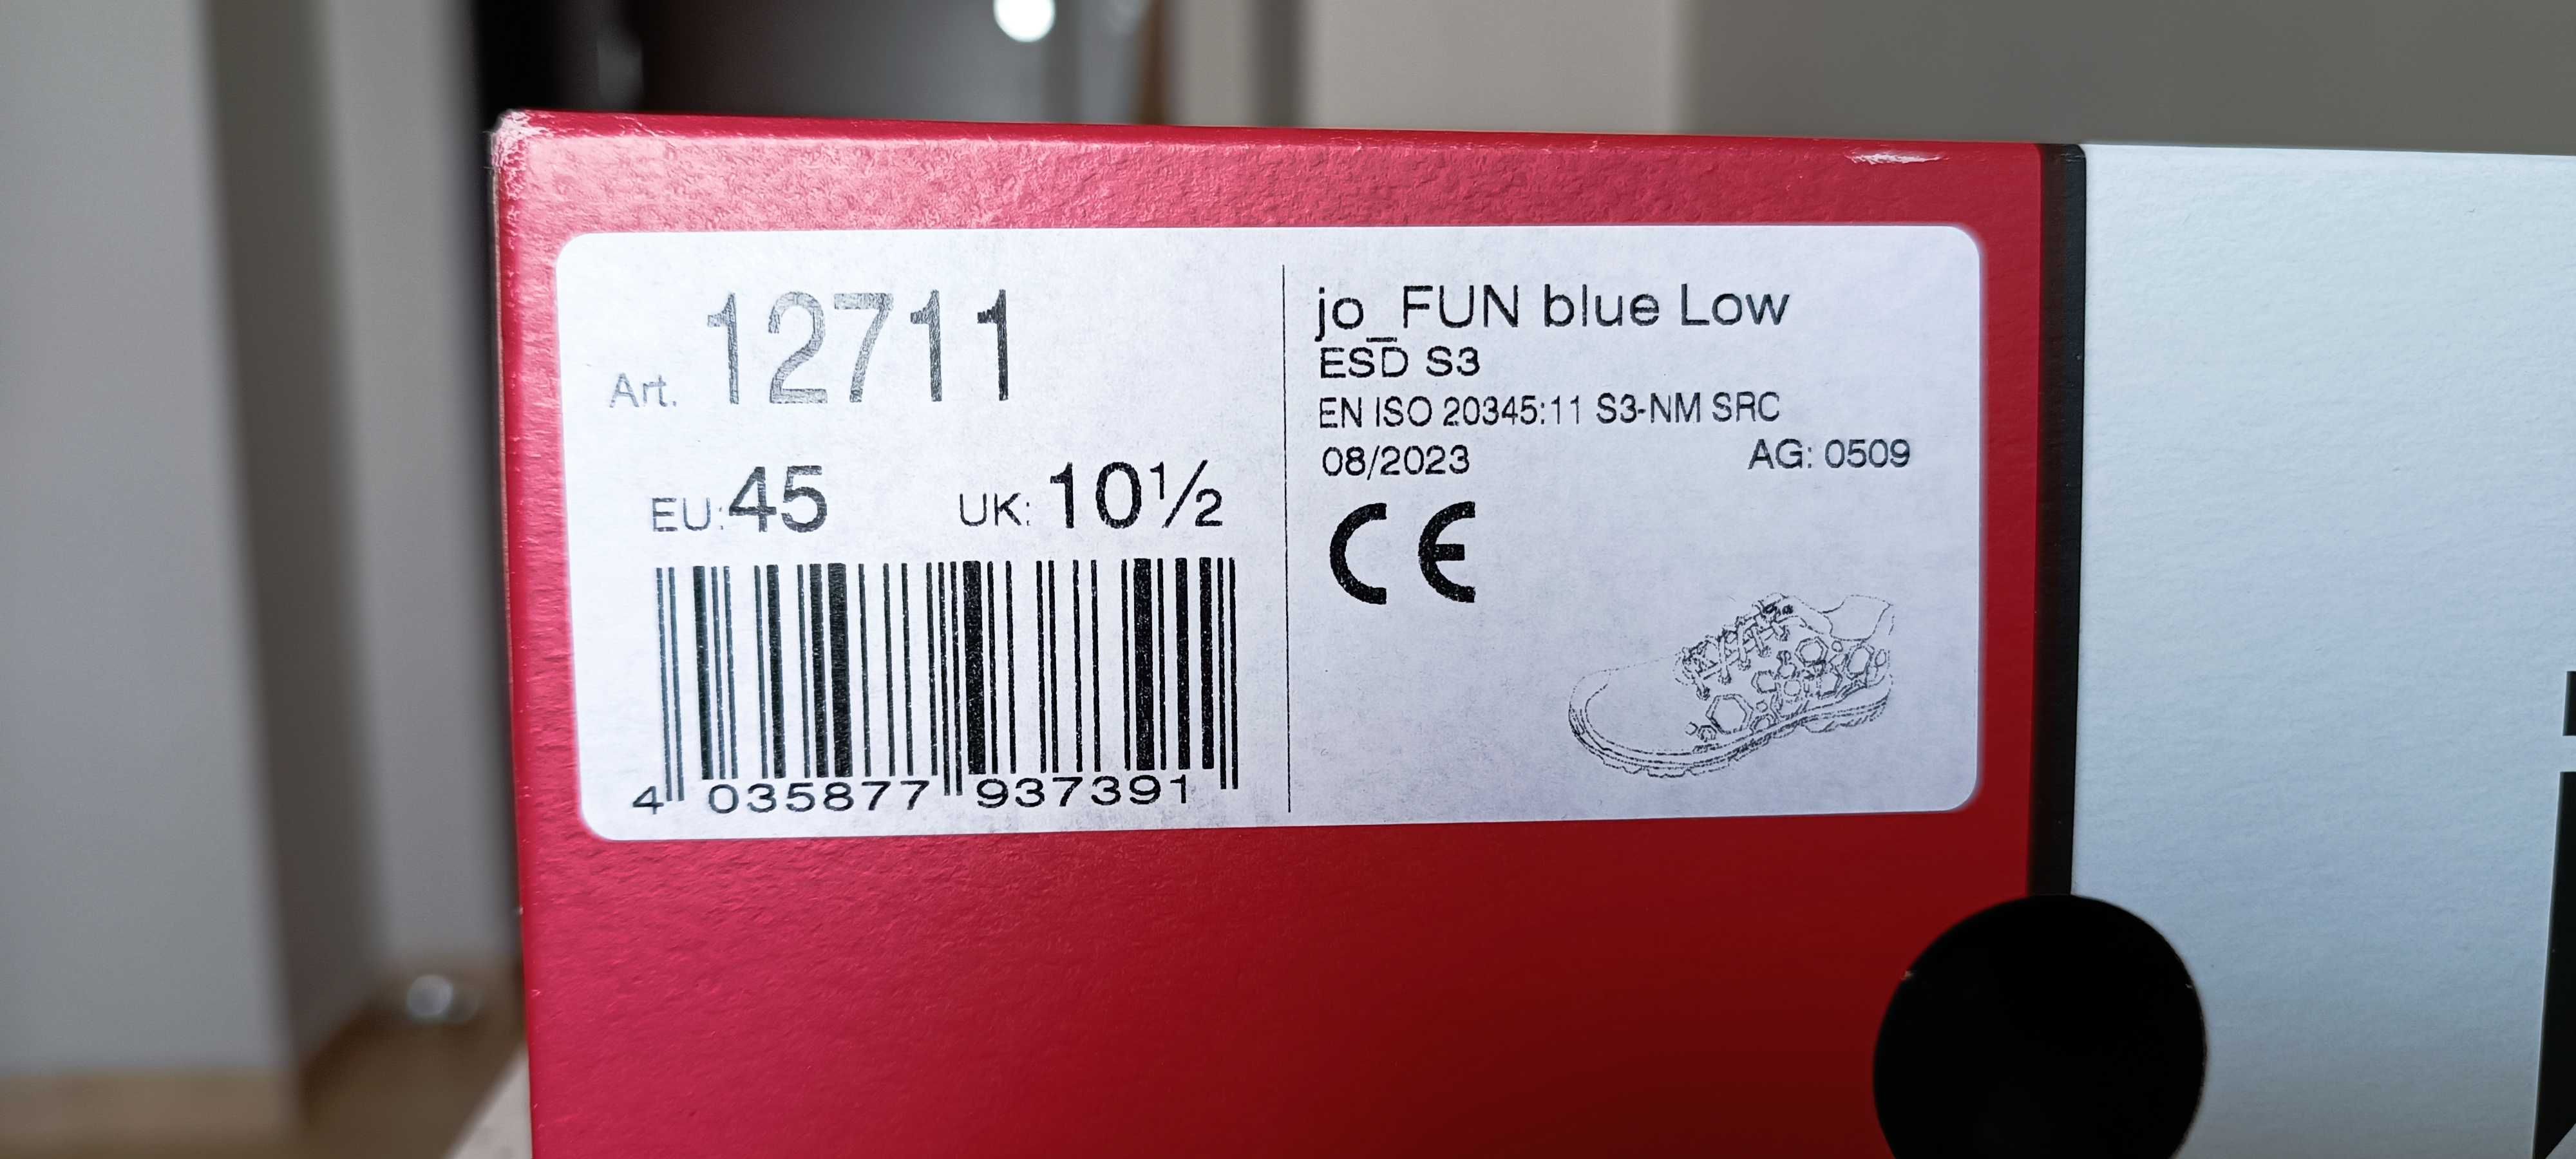 Wygodne buty robocze Jori fun blue low esd S3 12711 - rozmiar 45